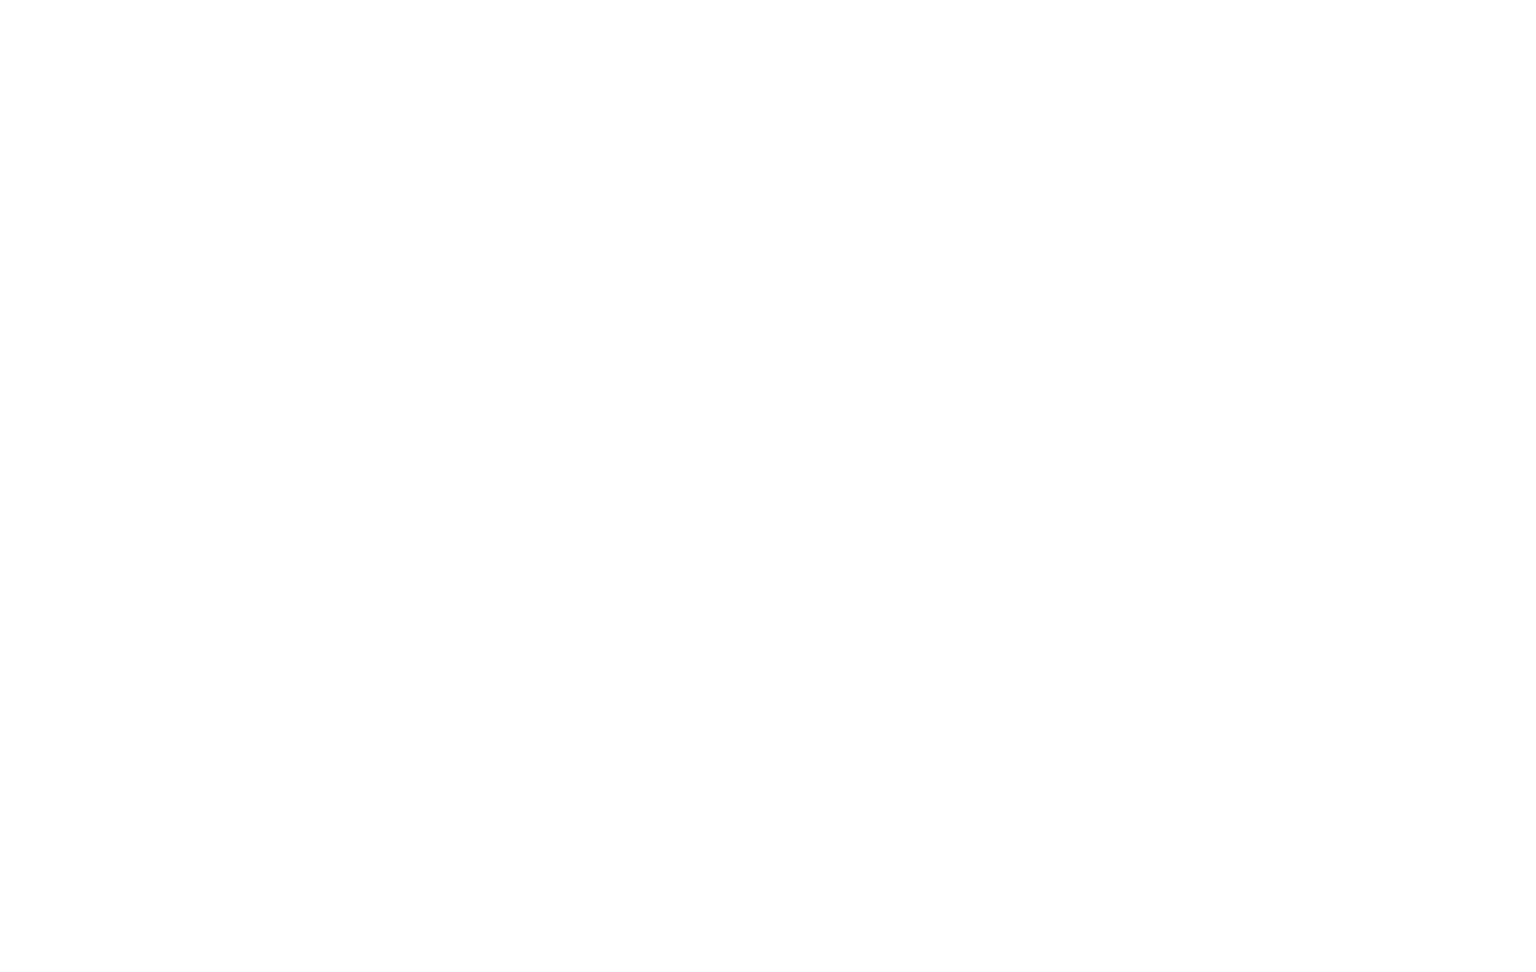 DoSol